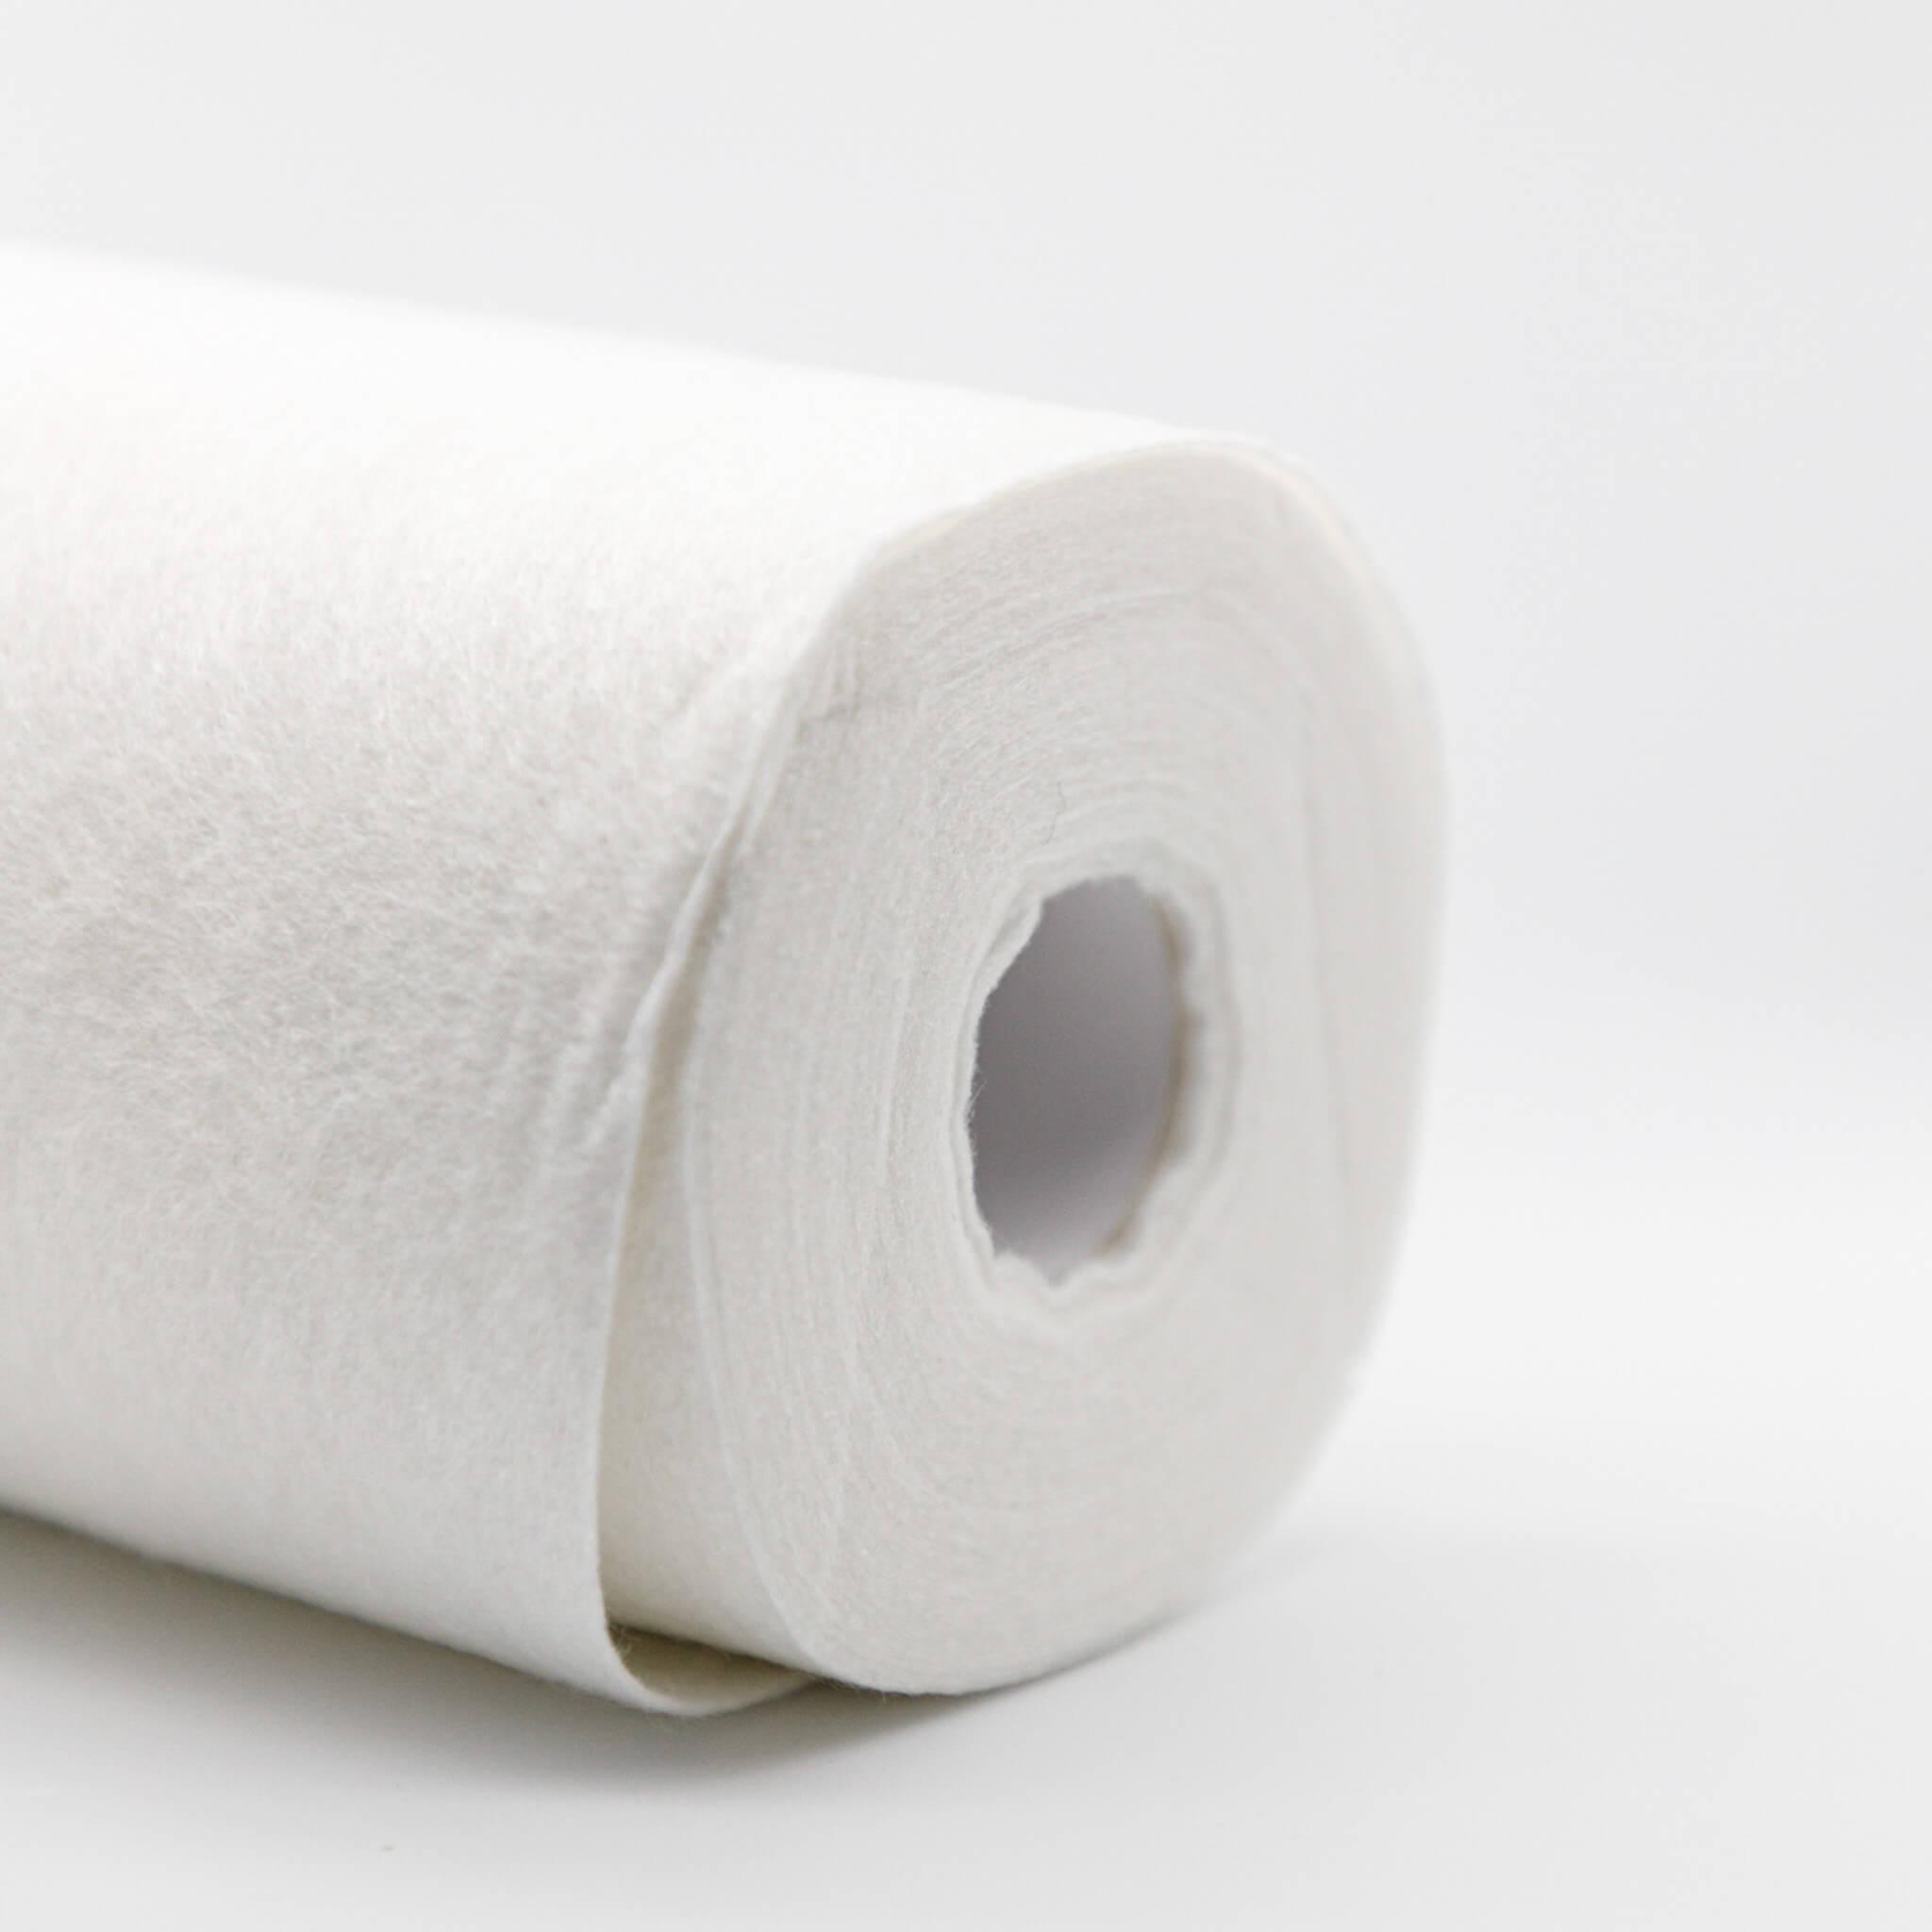 http://seekbamboo.com/cdn/shop/articles/best-reusable-paper-towels-seek-bamboo.jpg?v=1692655500